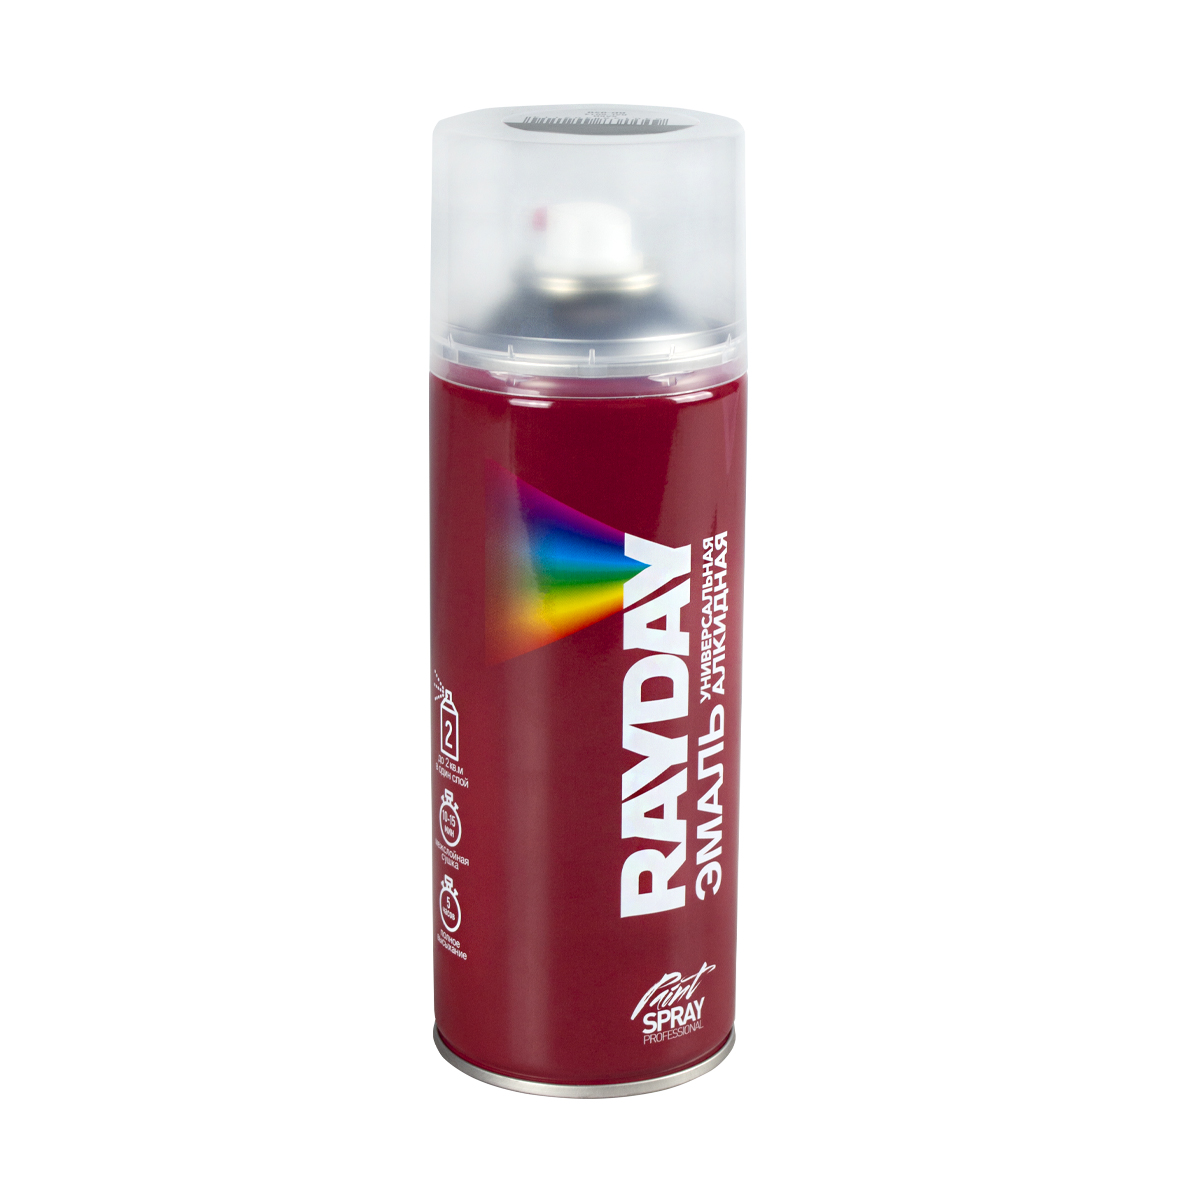 Краска аэрозольная алкидная Rayday RD-050, глянцевая, 520 мл, хаки